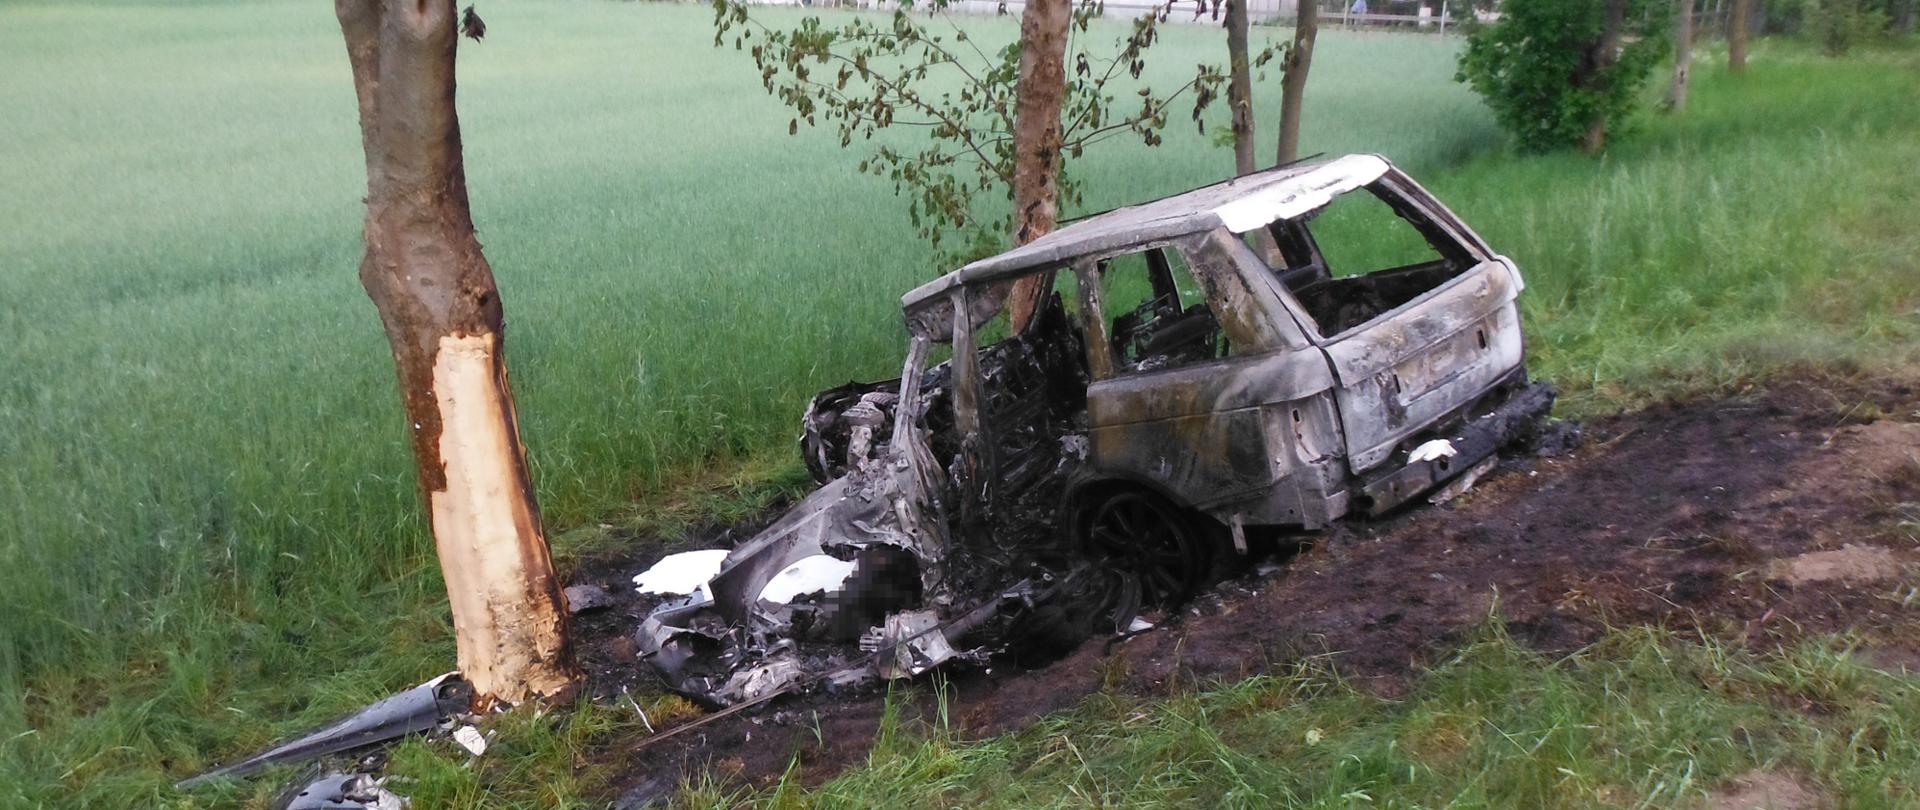 Spalony samochód osobowy na poboczu drogi. Obok drzewo z obdartym z kory pniem.